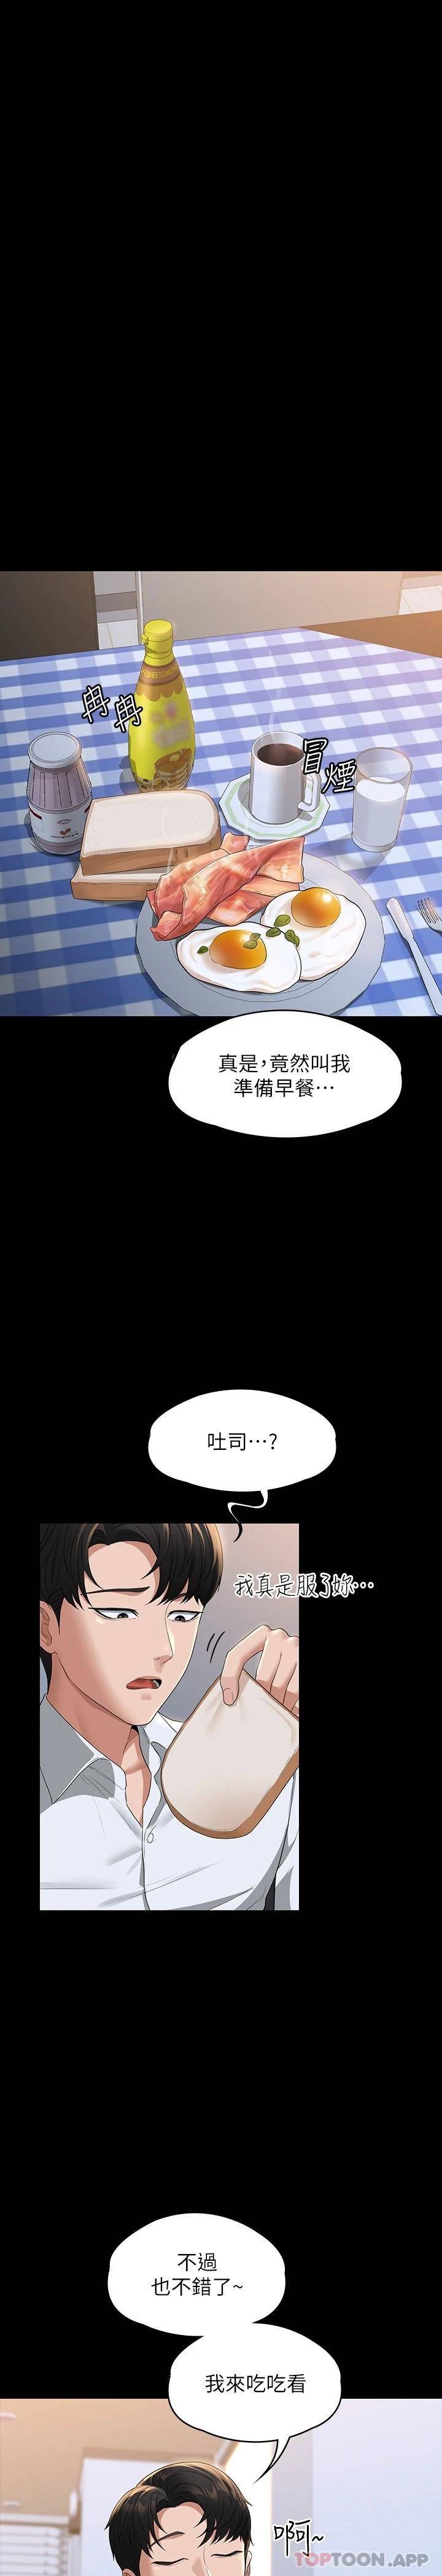 韩国污漫画 超級公務員 第40话 呻吟和咆哮交织的夜晚 29